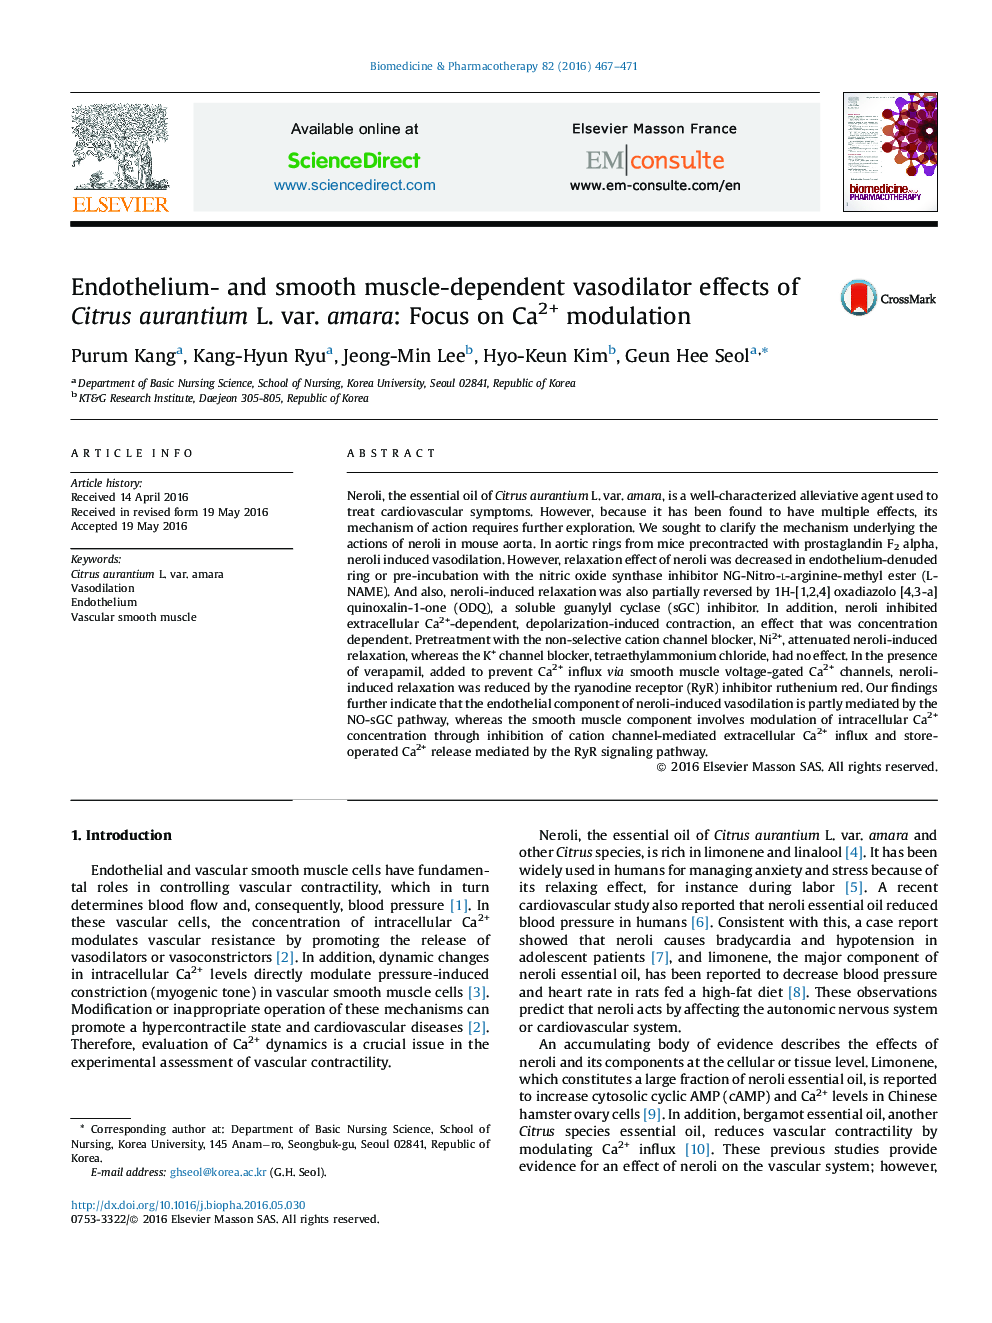 Endothelium- and smooth muscle-dependent vasodilator effects of Citrus aurantium L. var. amara: Focus on Ca2+ modulation